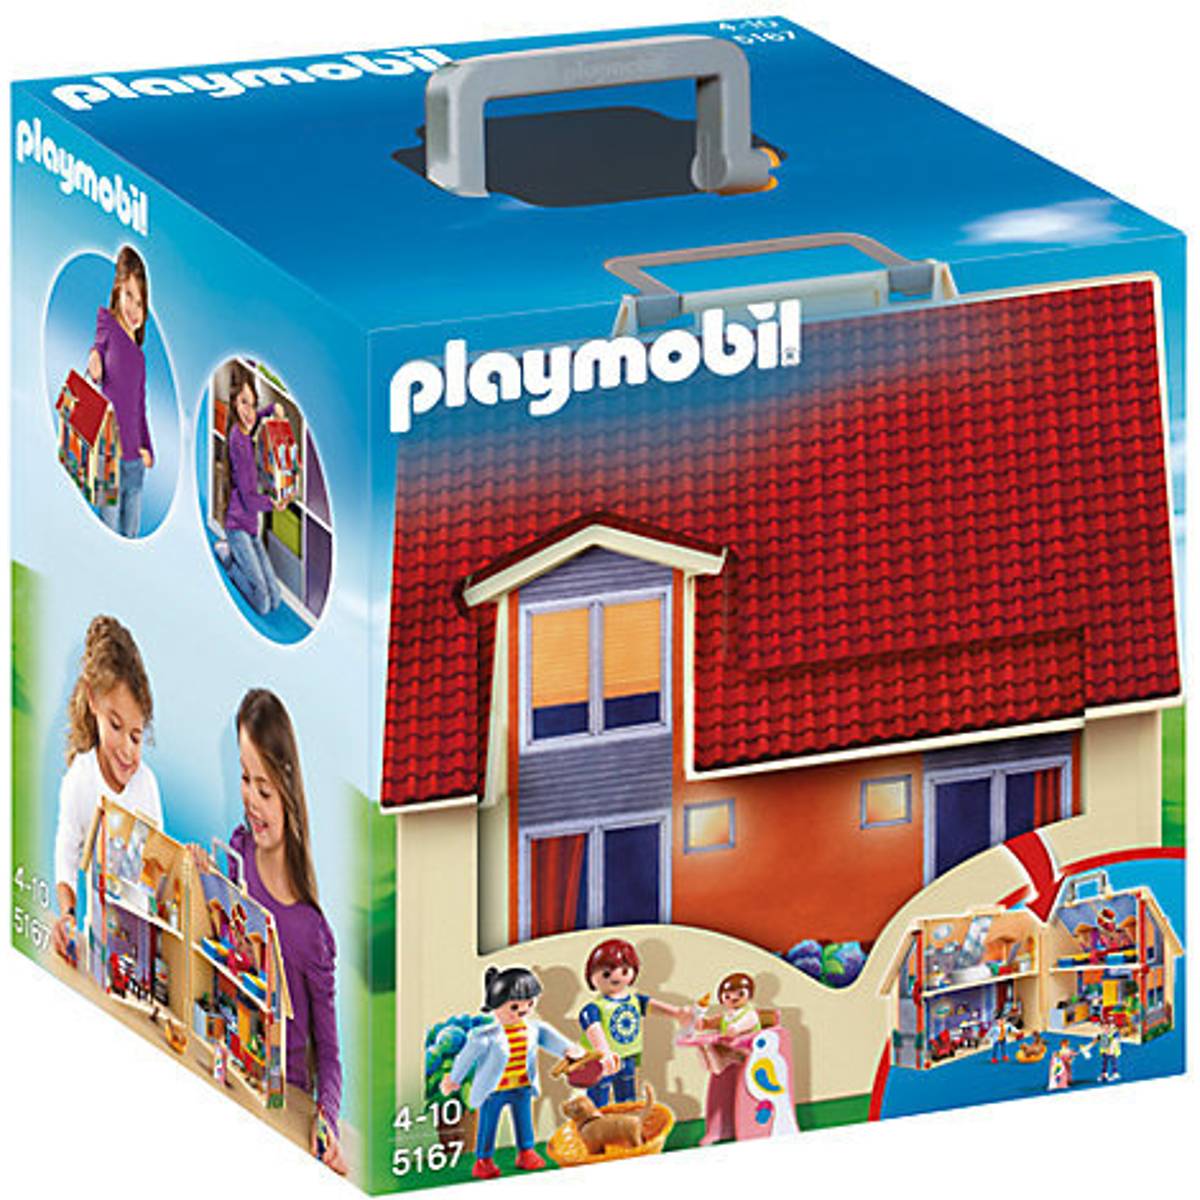 Playmobil dukkehus • Find den billigste pris hos PriceRunner nu »